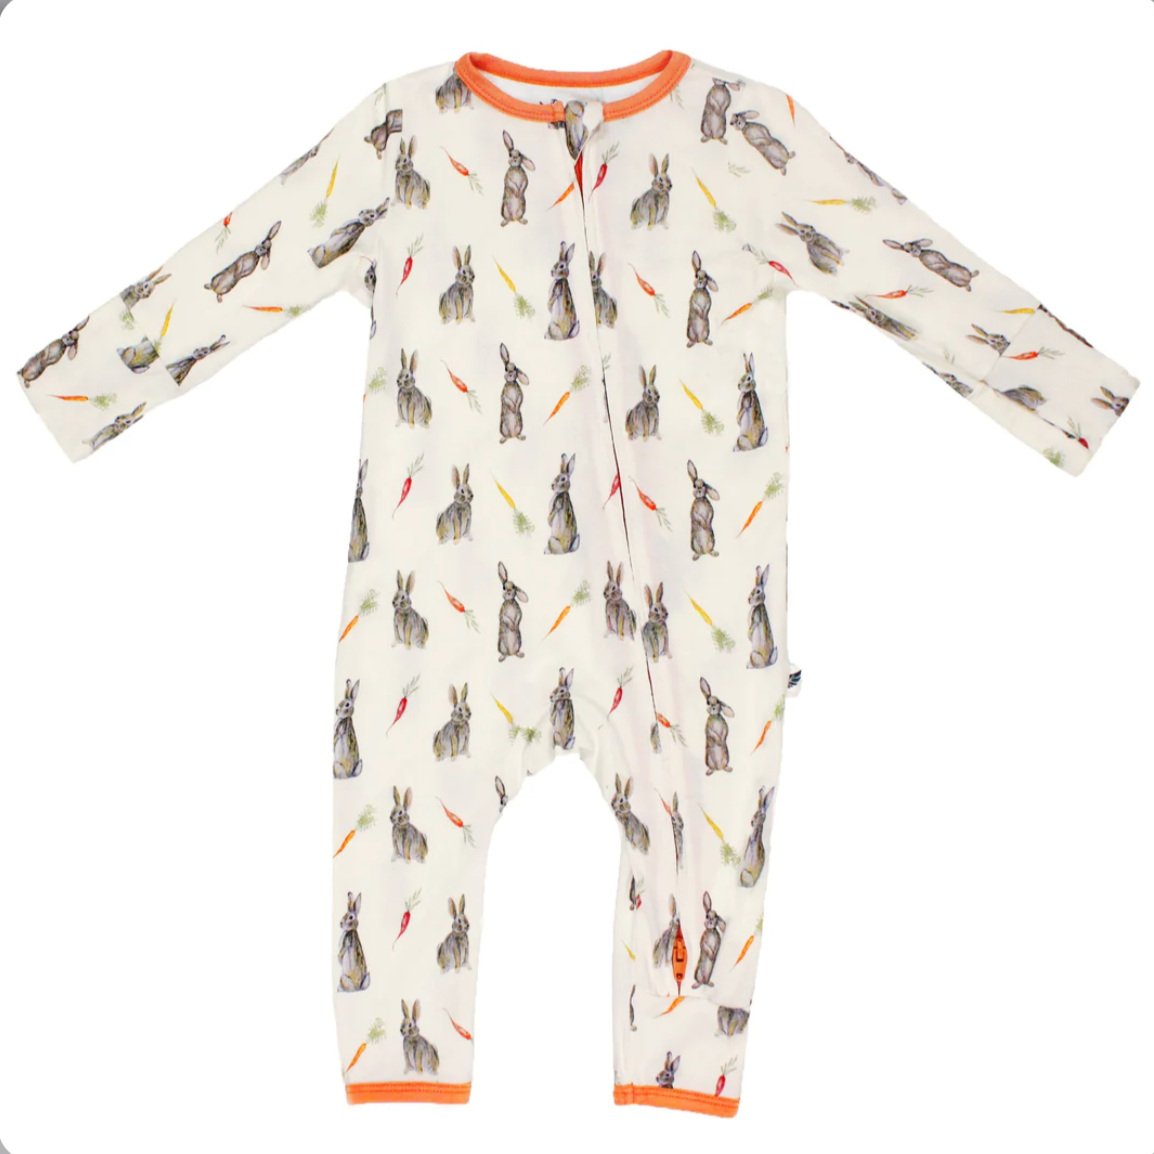 Baby + Kids Easter Pajamas